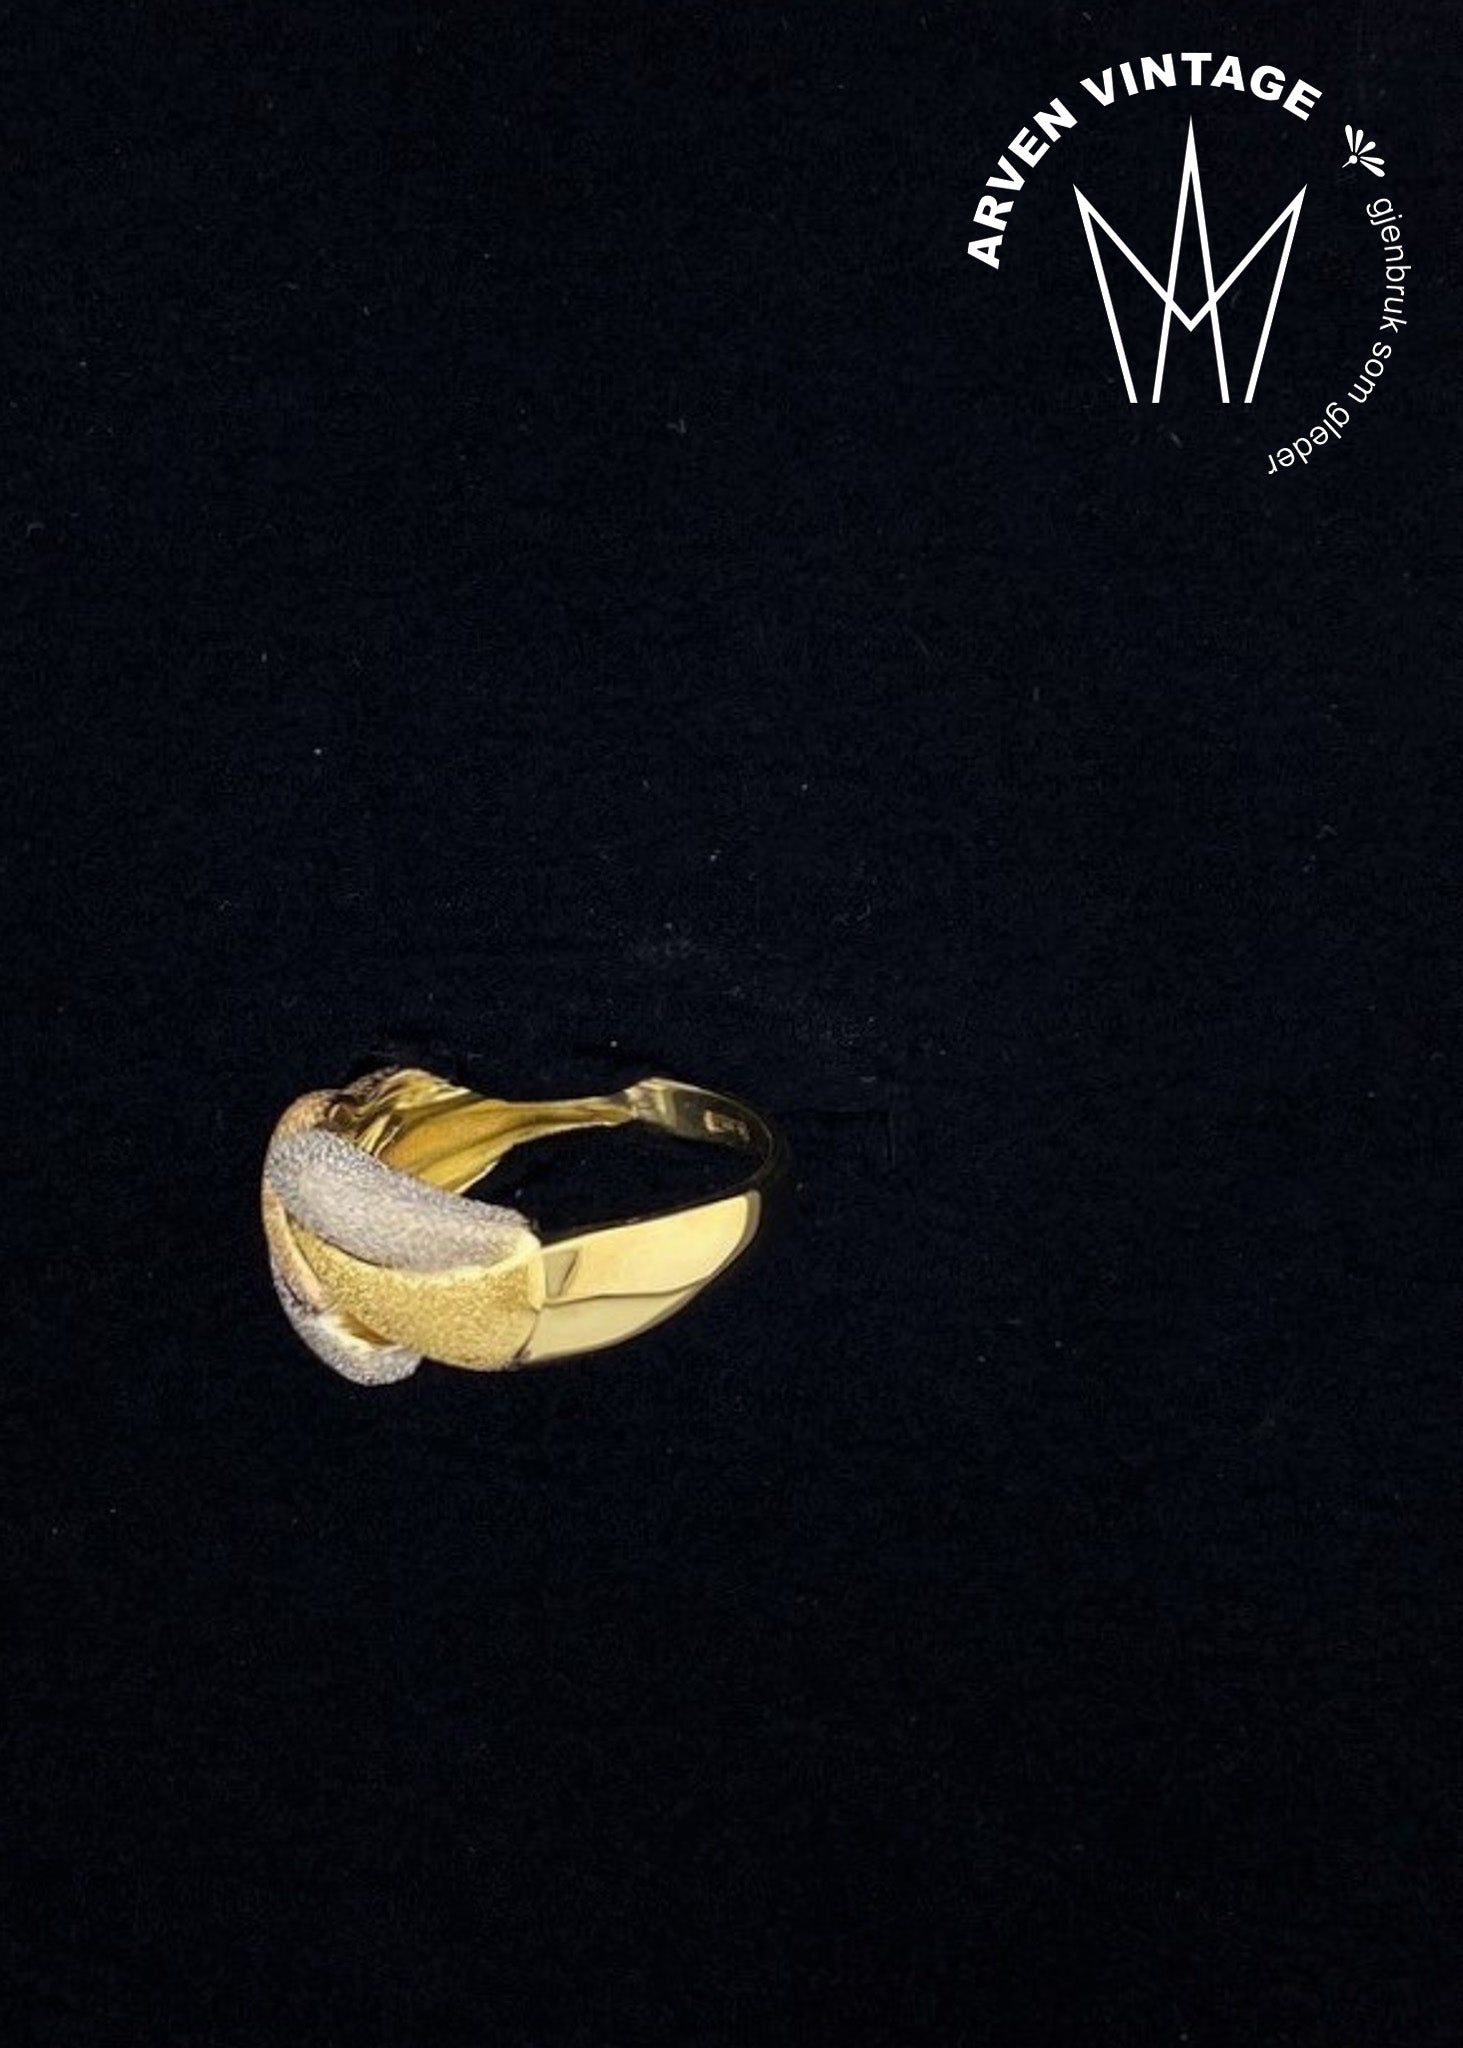 Vintage ring i hvitt-, gult- og roségull